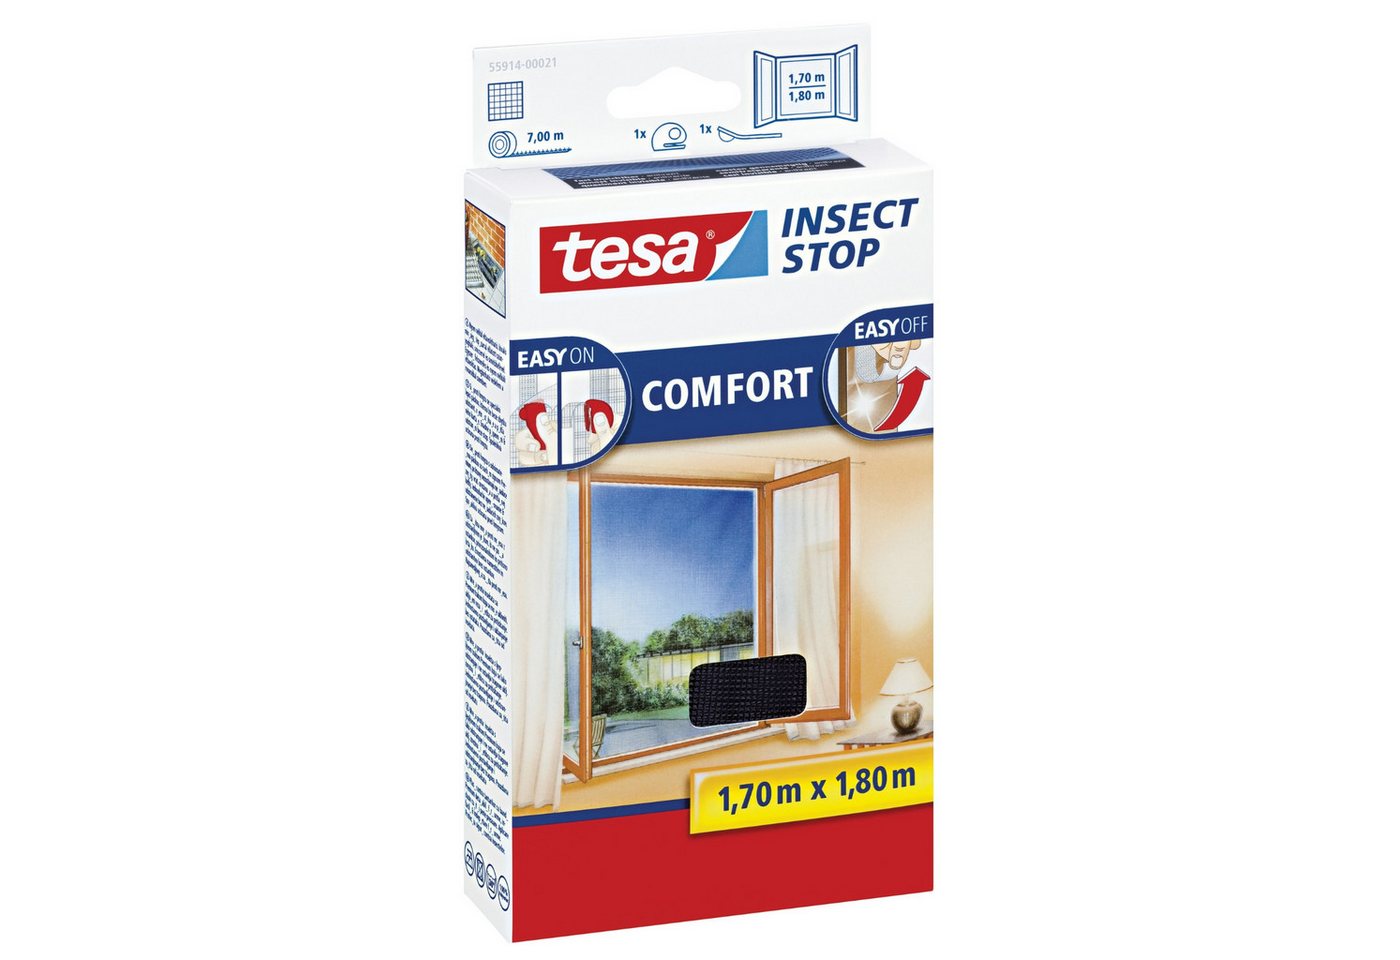 tesa Fliegengitter-Gewebe tesa Fliegengitter Insect Stop COMFORT für Fenster - 1,7 m x 1,8 m - von tesa